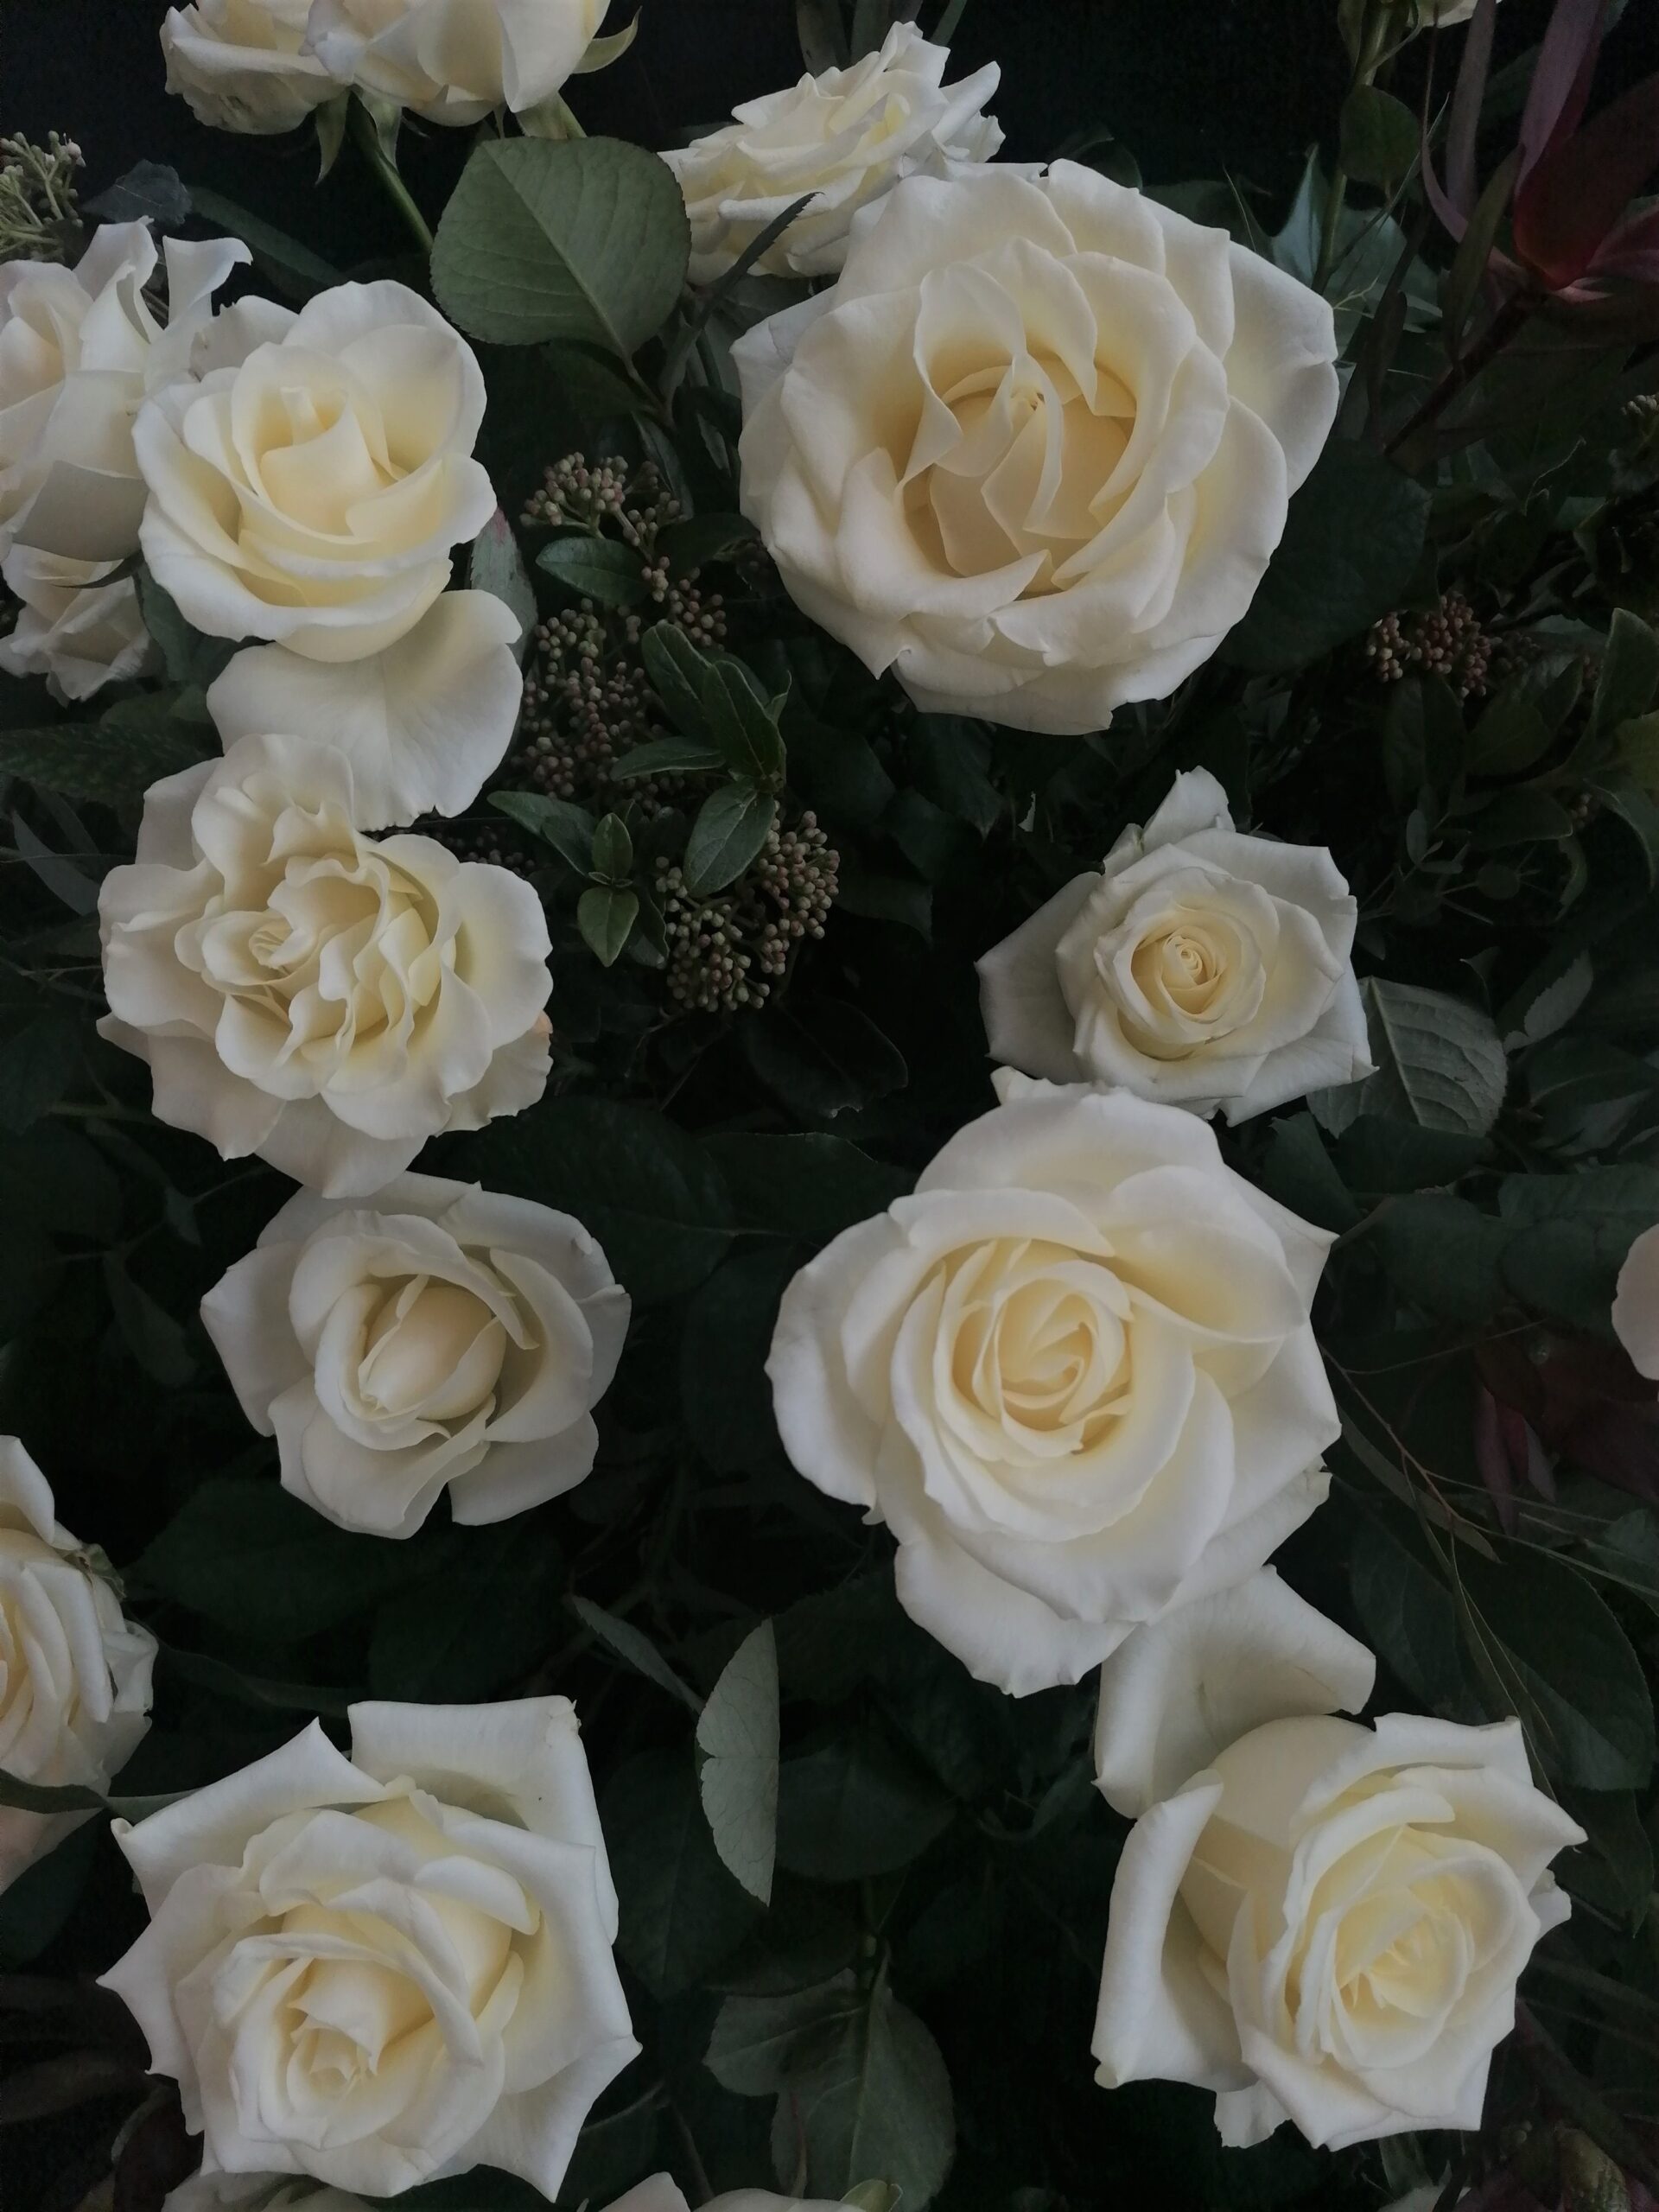 Przełamanie kolorystyczne bieli stanowi leukadendron - towarzysz róż oraz duża ilość zieleni.